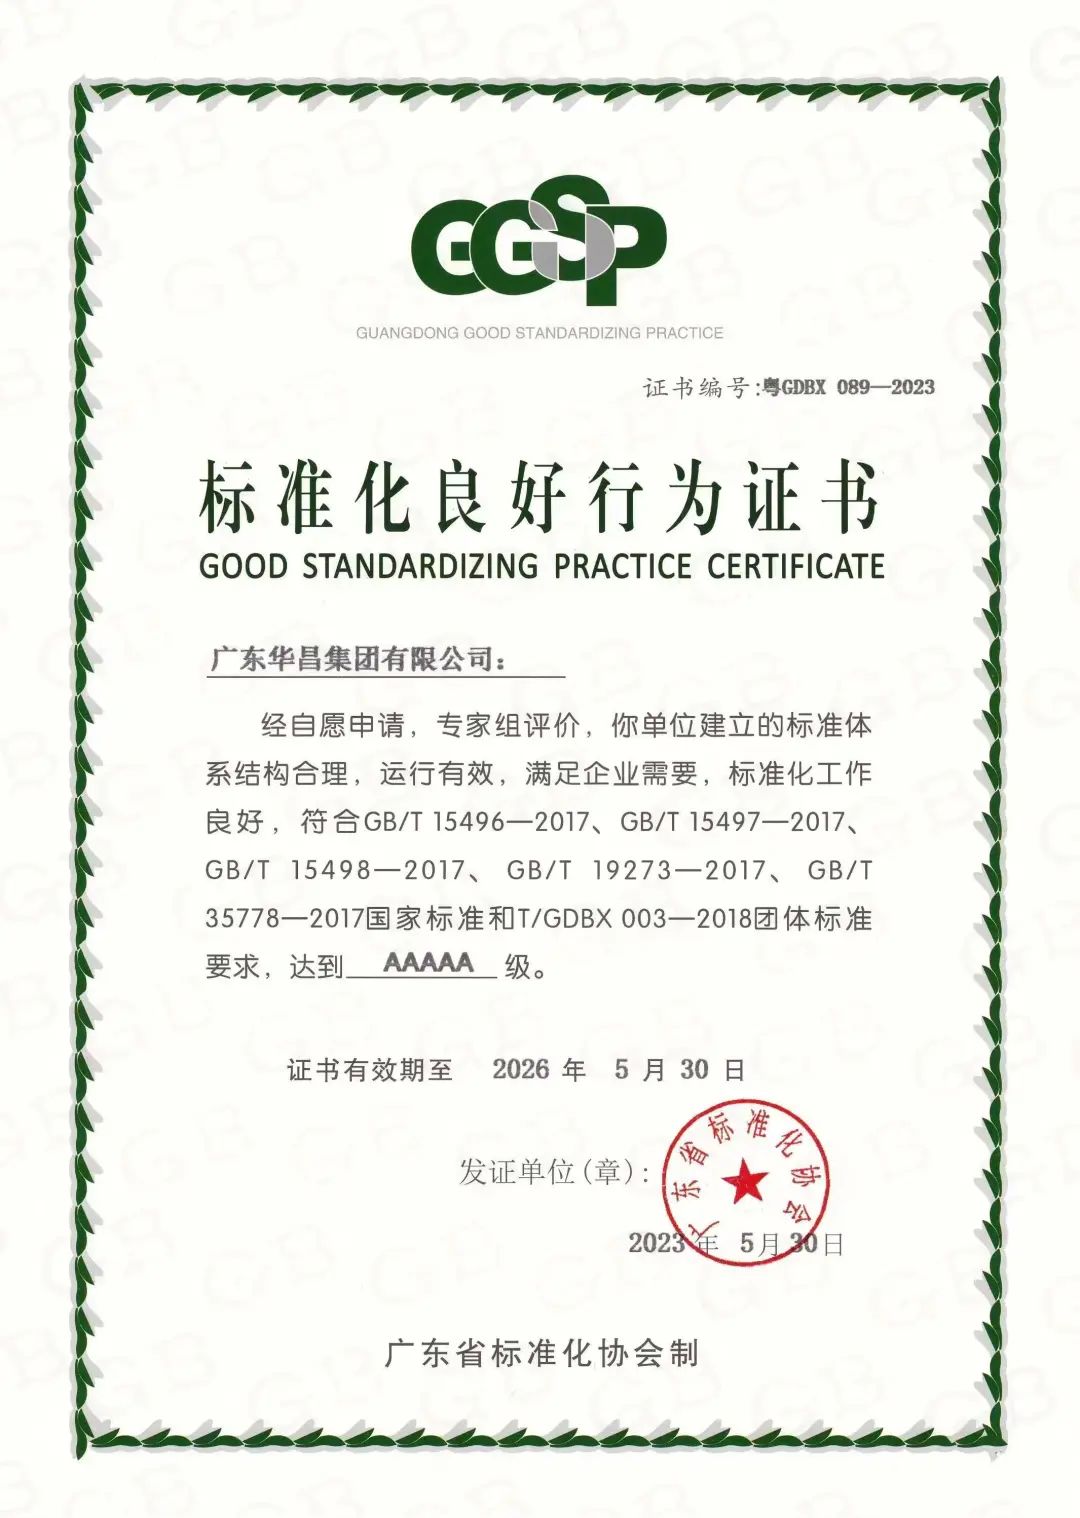 乐虎国际lehu9888被评为“标准化良好行为AAAAA级企业”